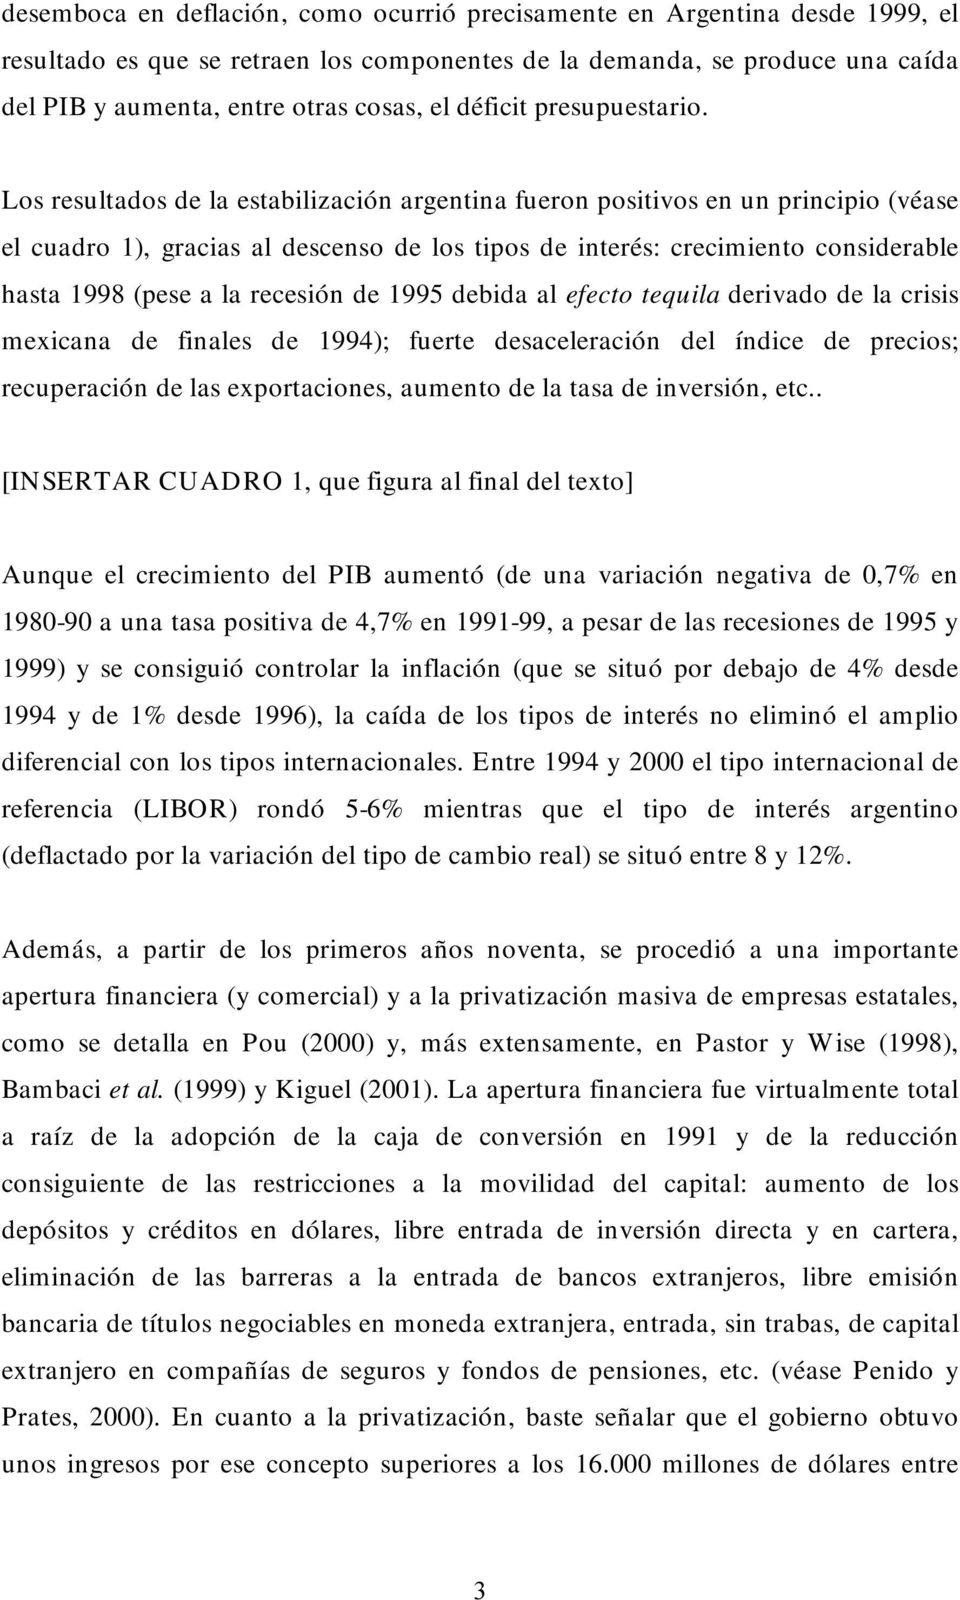 Los resultados de la estabilización argentina fueron positivos en un principio (véase el cuadro 1), gracias al descenso de los tipos de interés: crecimiento considerable hasta 1998 (pese a la